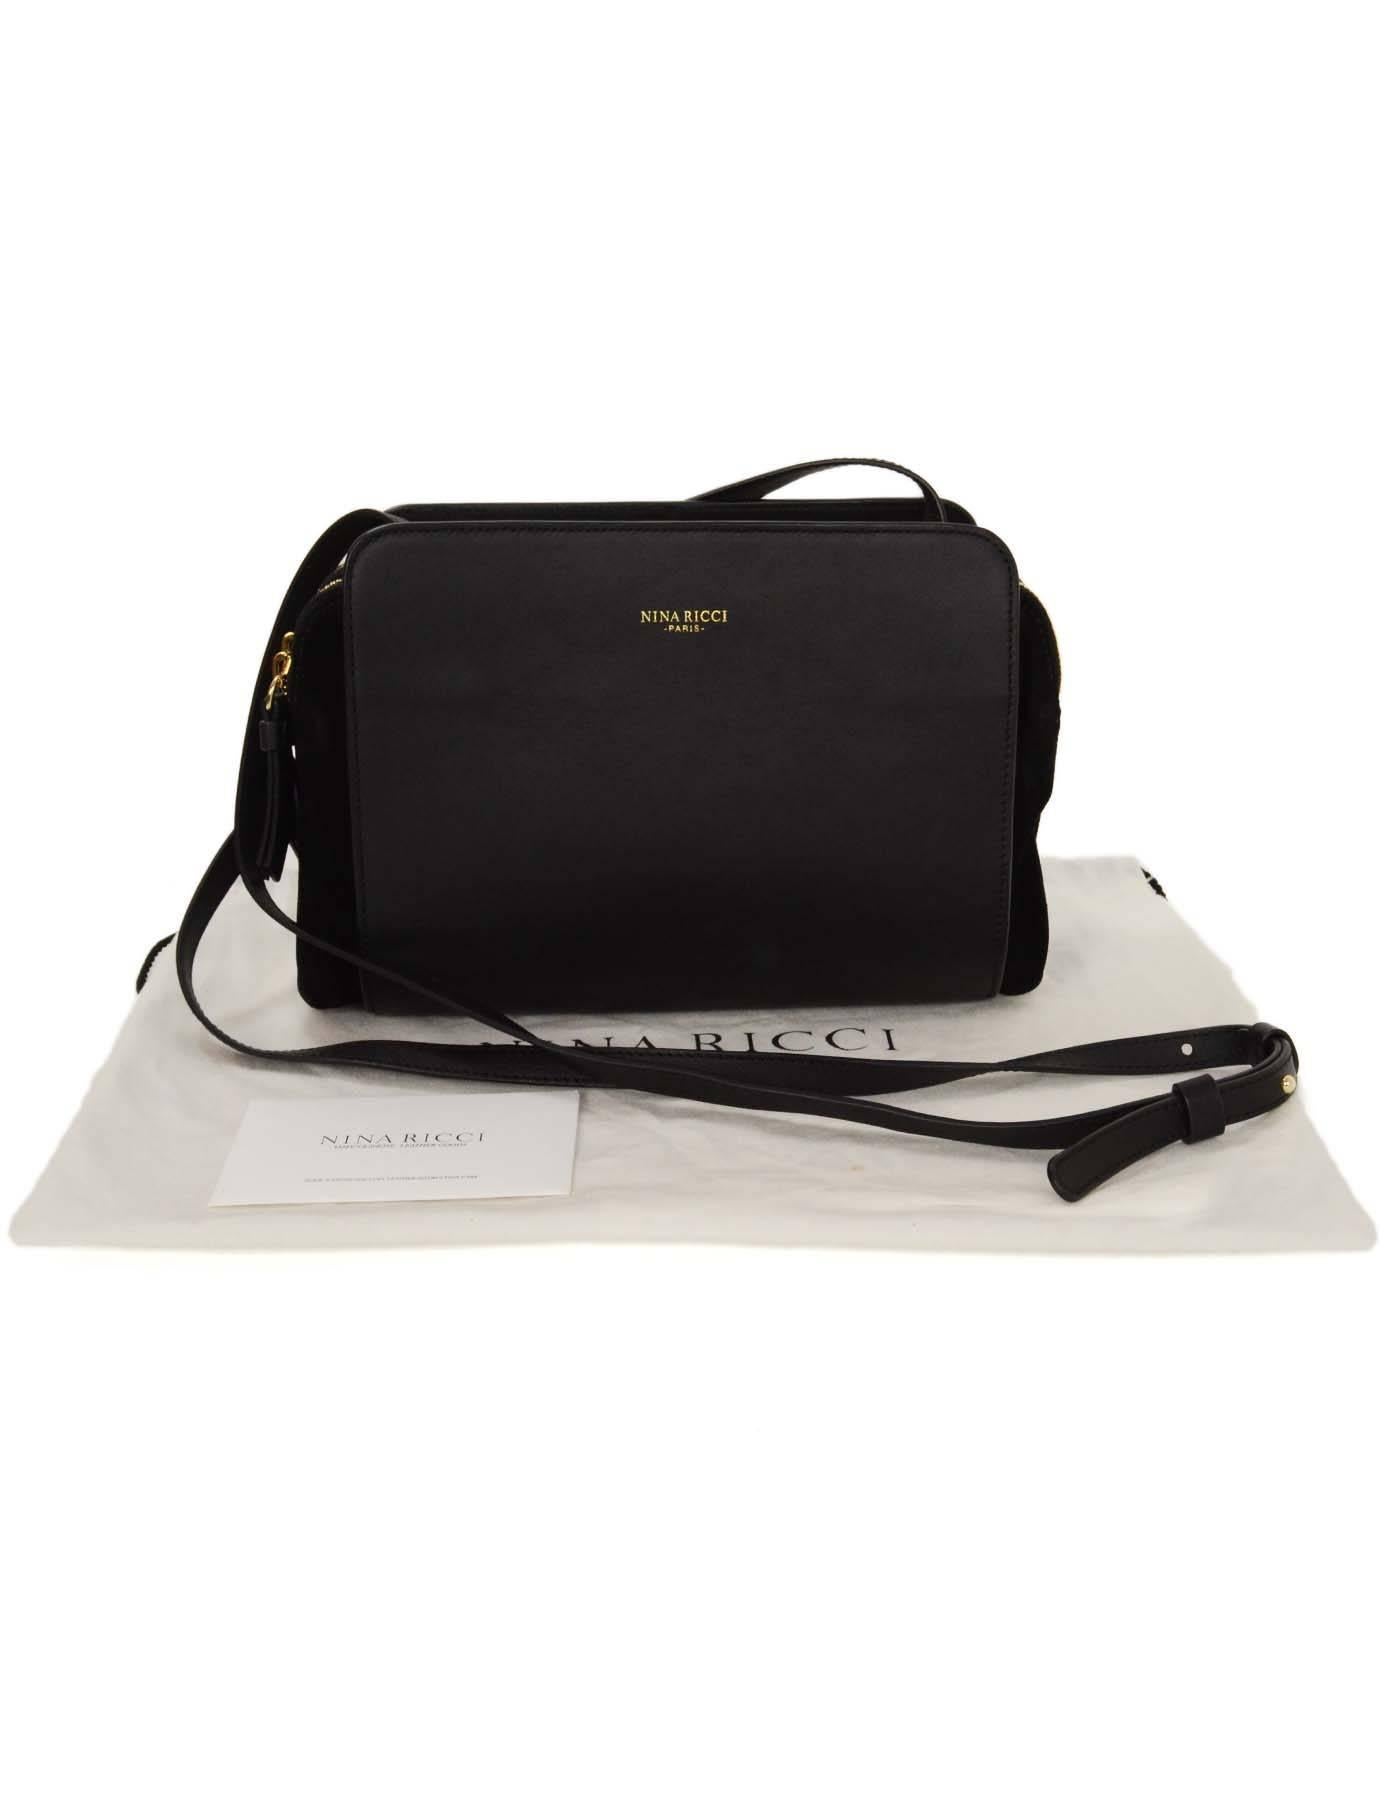 Nina Ricci Black Leather& Suede Crossbody Bag GHW 3